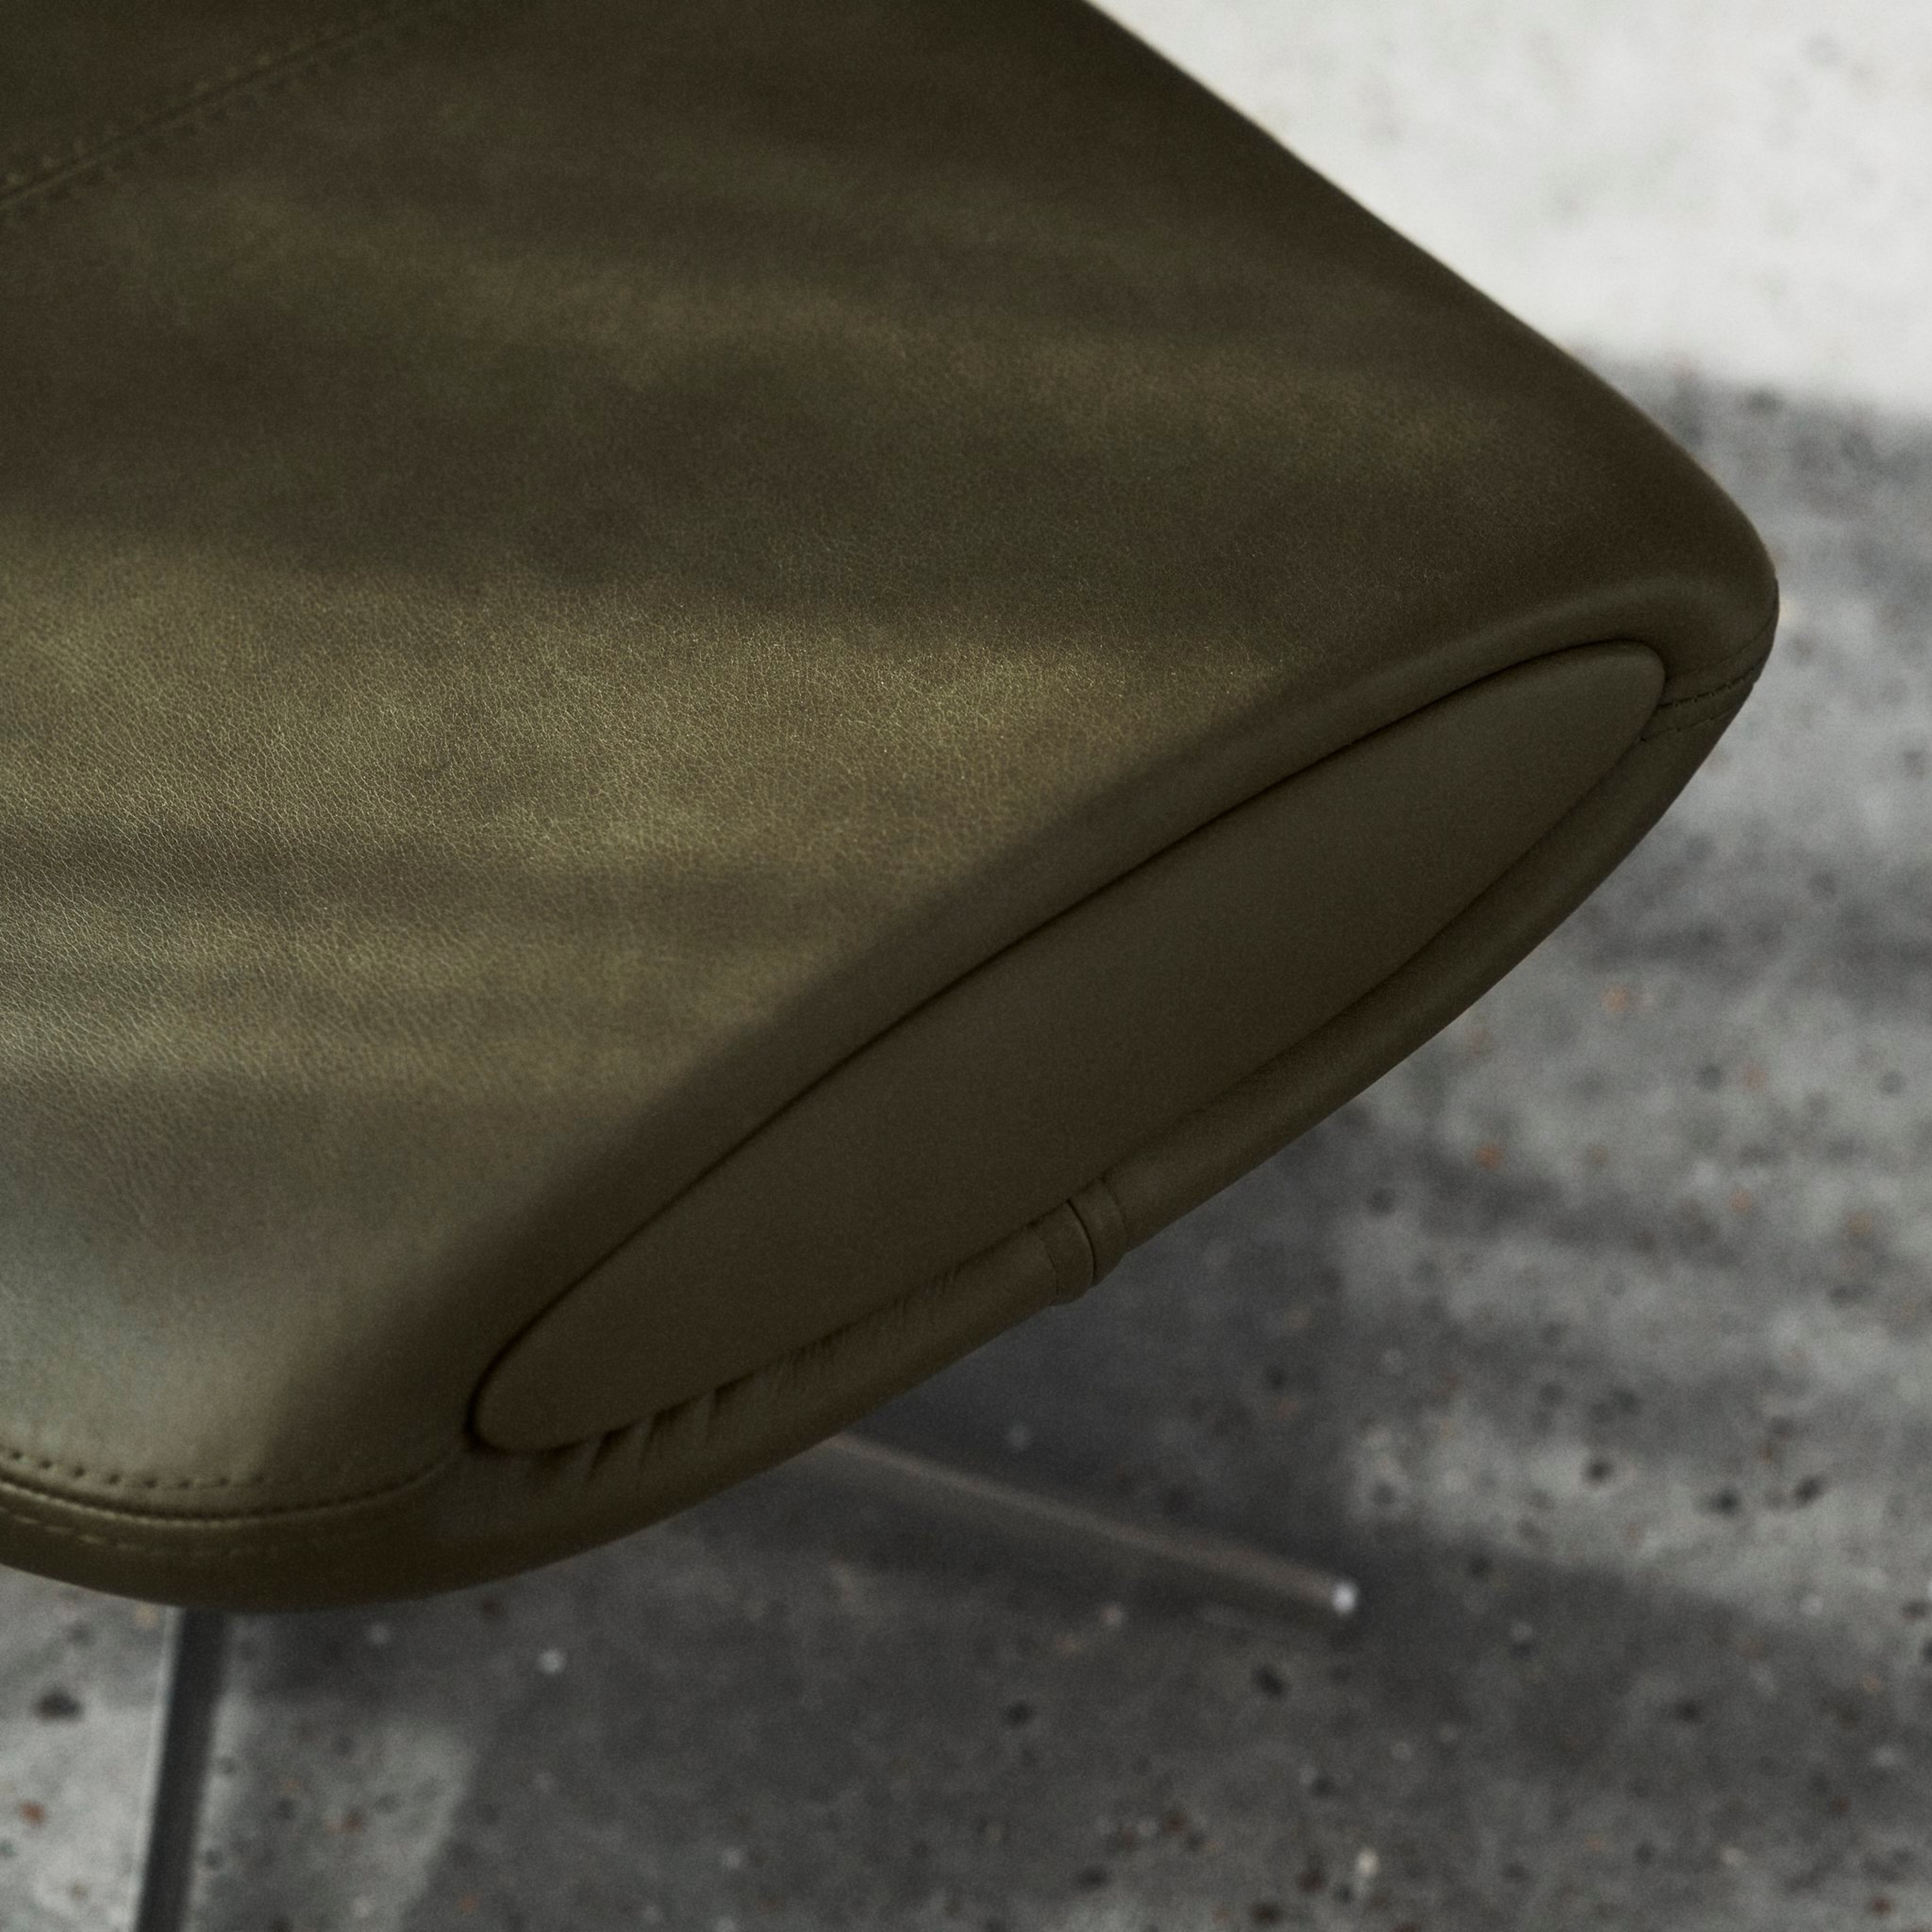 Nærbillede af olivengrøn stolekant med syninger på betongulv.